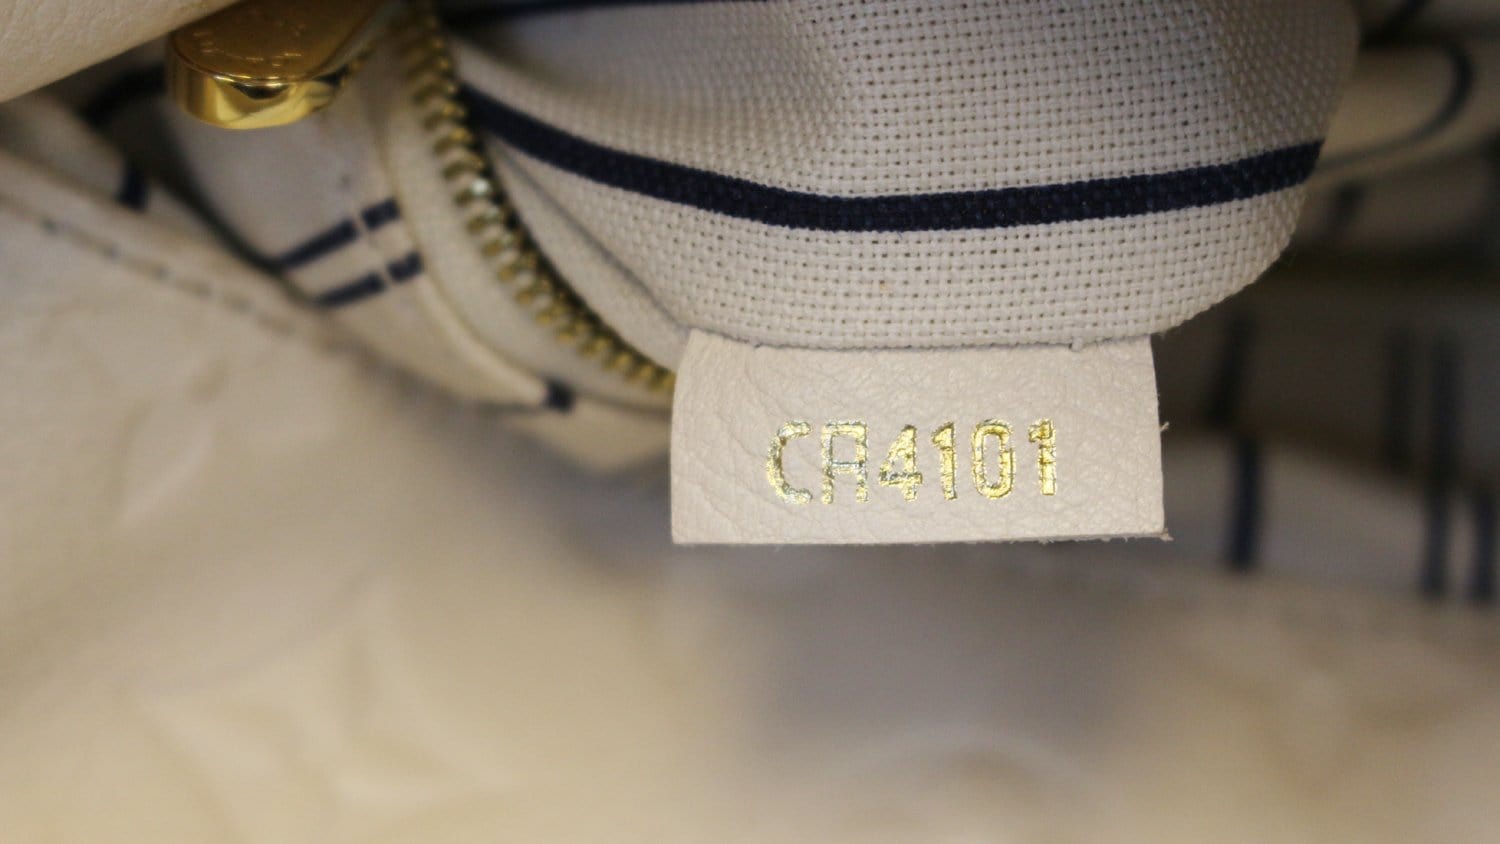 Louis Vuitton Neige Monogram Empreinte Leather Artsy MM Bag Louis Vuitton